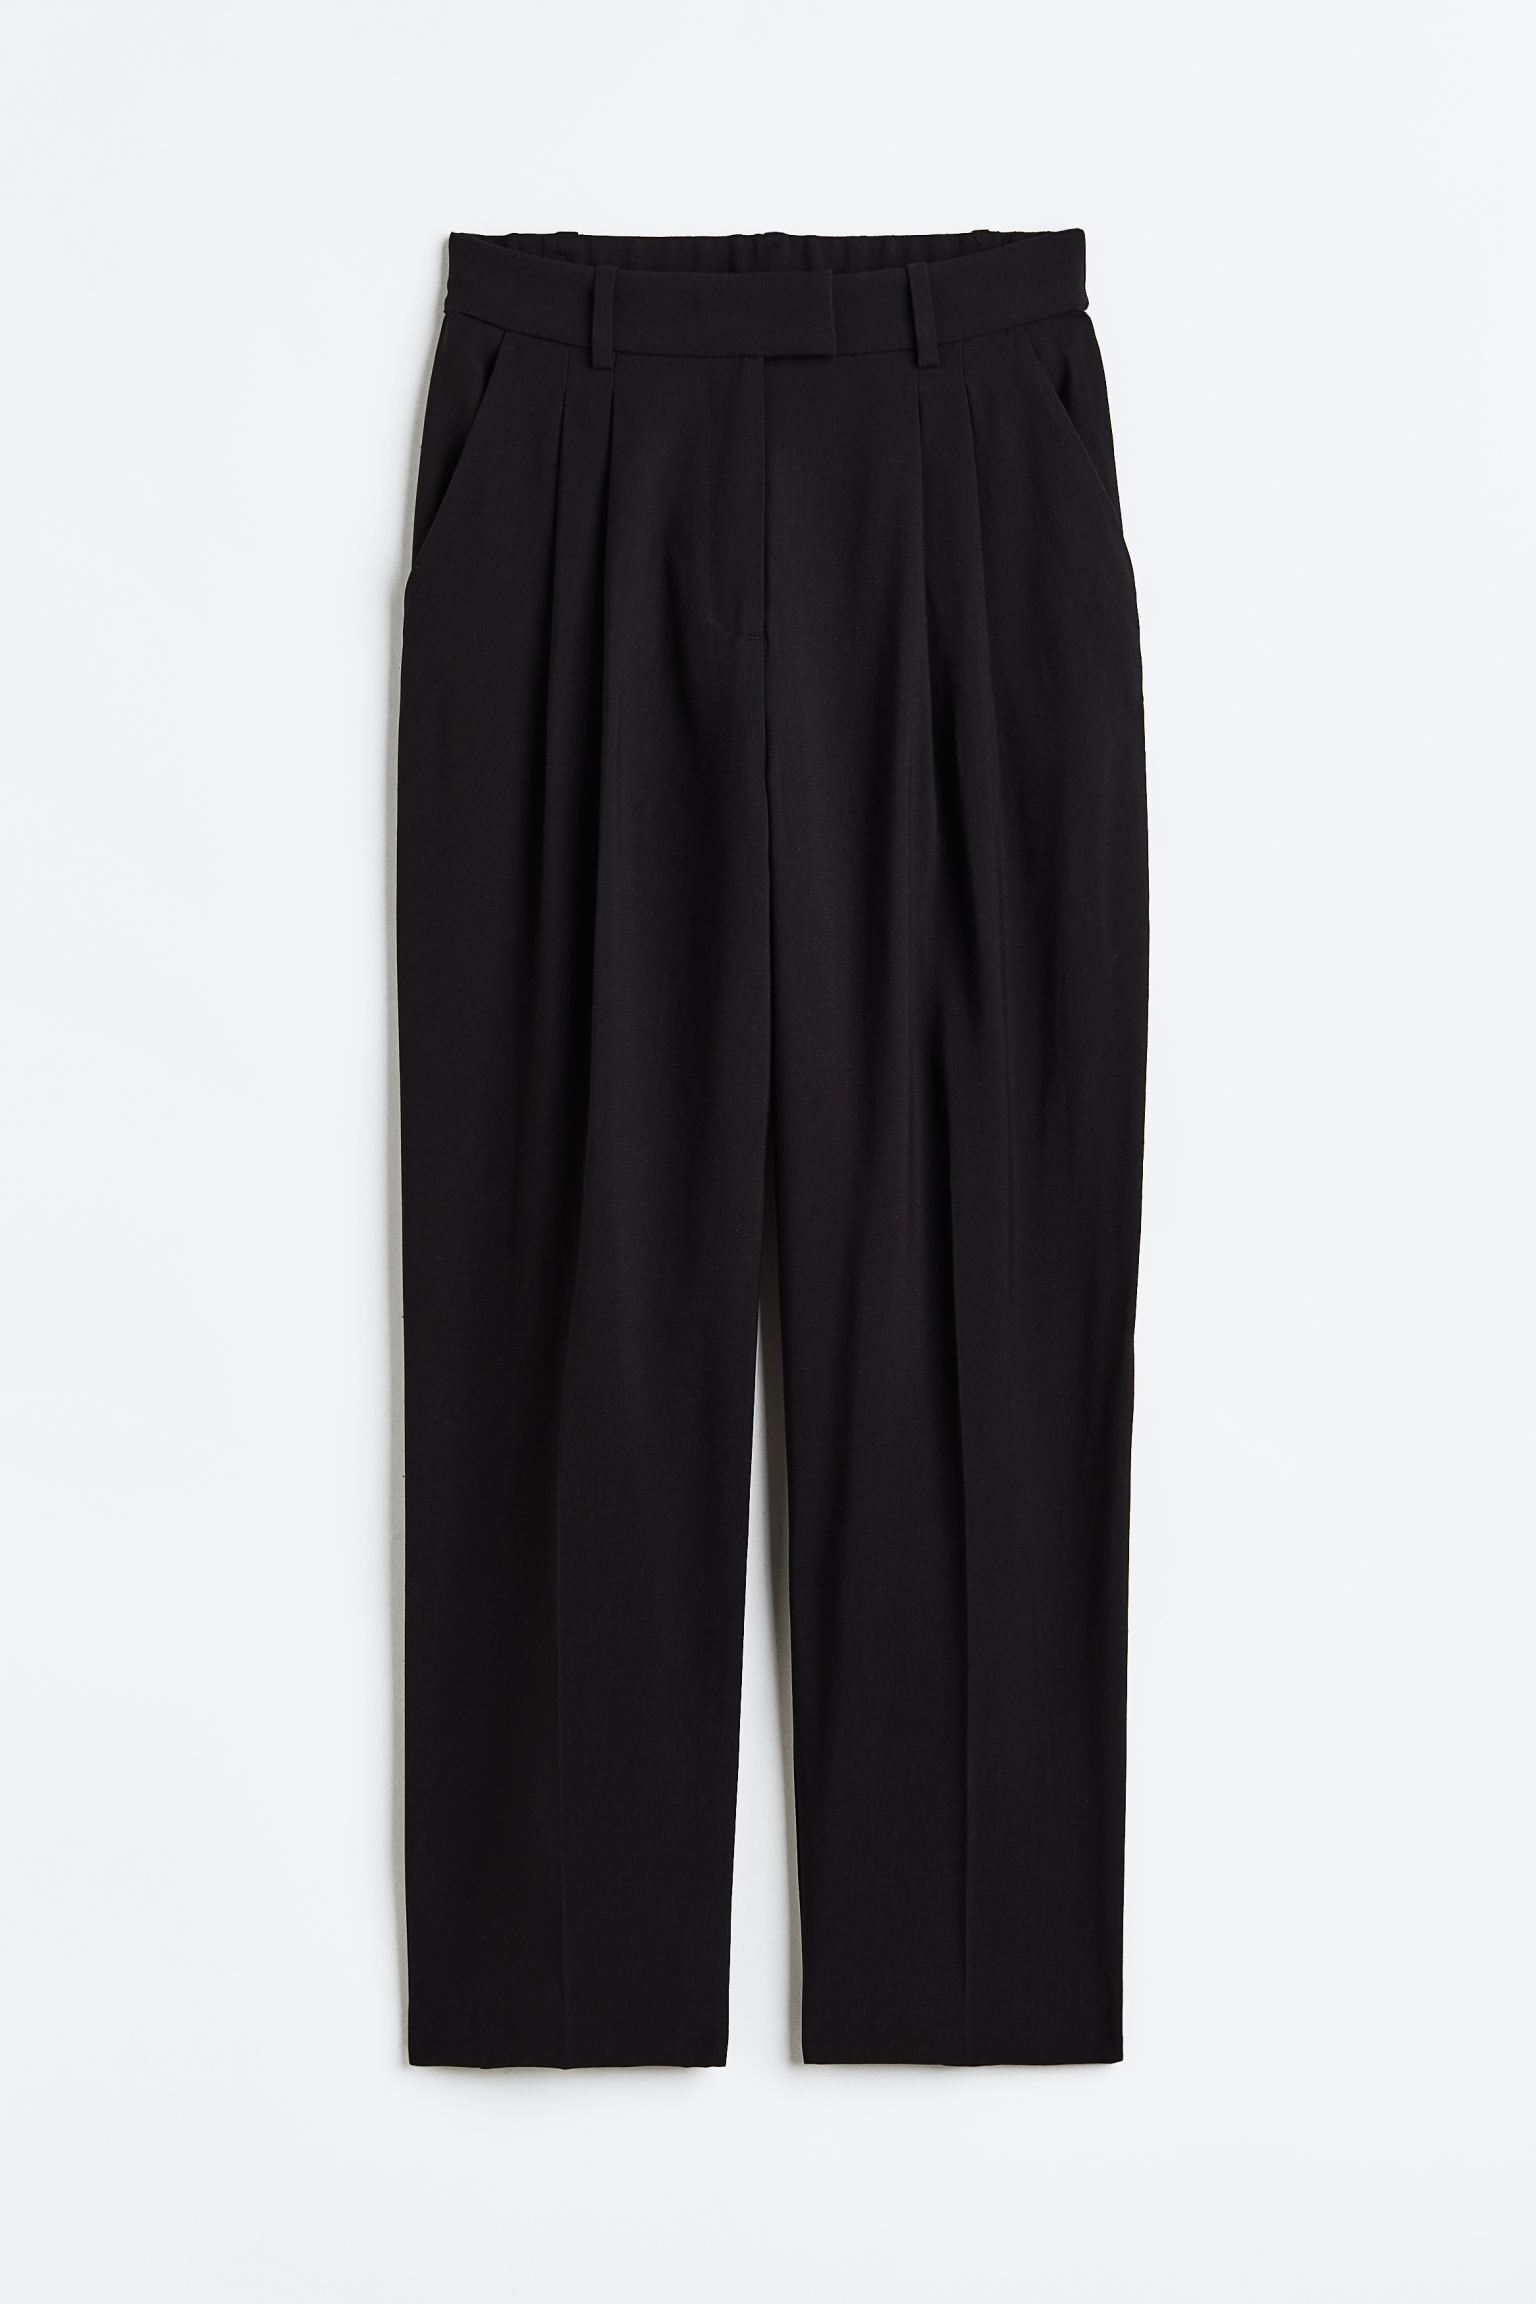 Брюки H&M Ankle-length, черный брюки uniqlo smart wool like ankle length черный